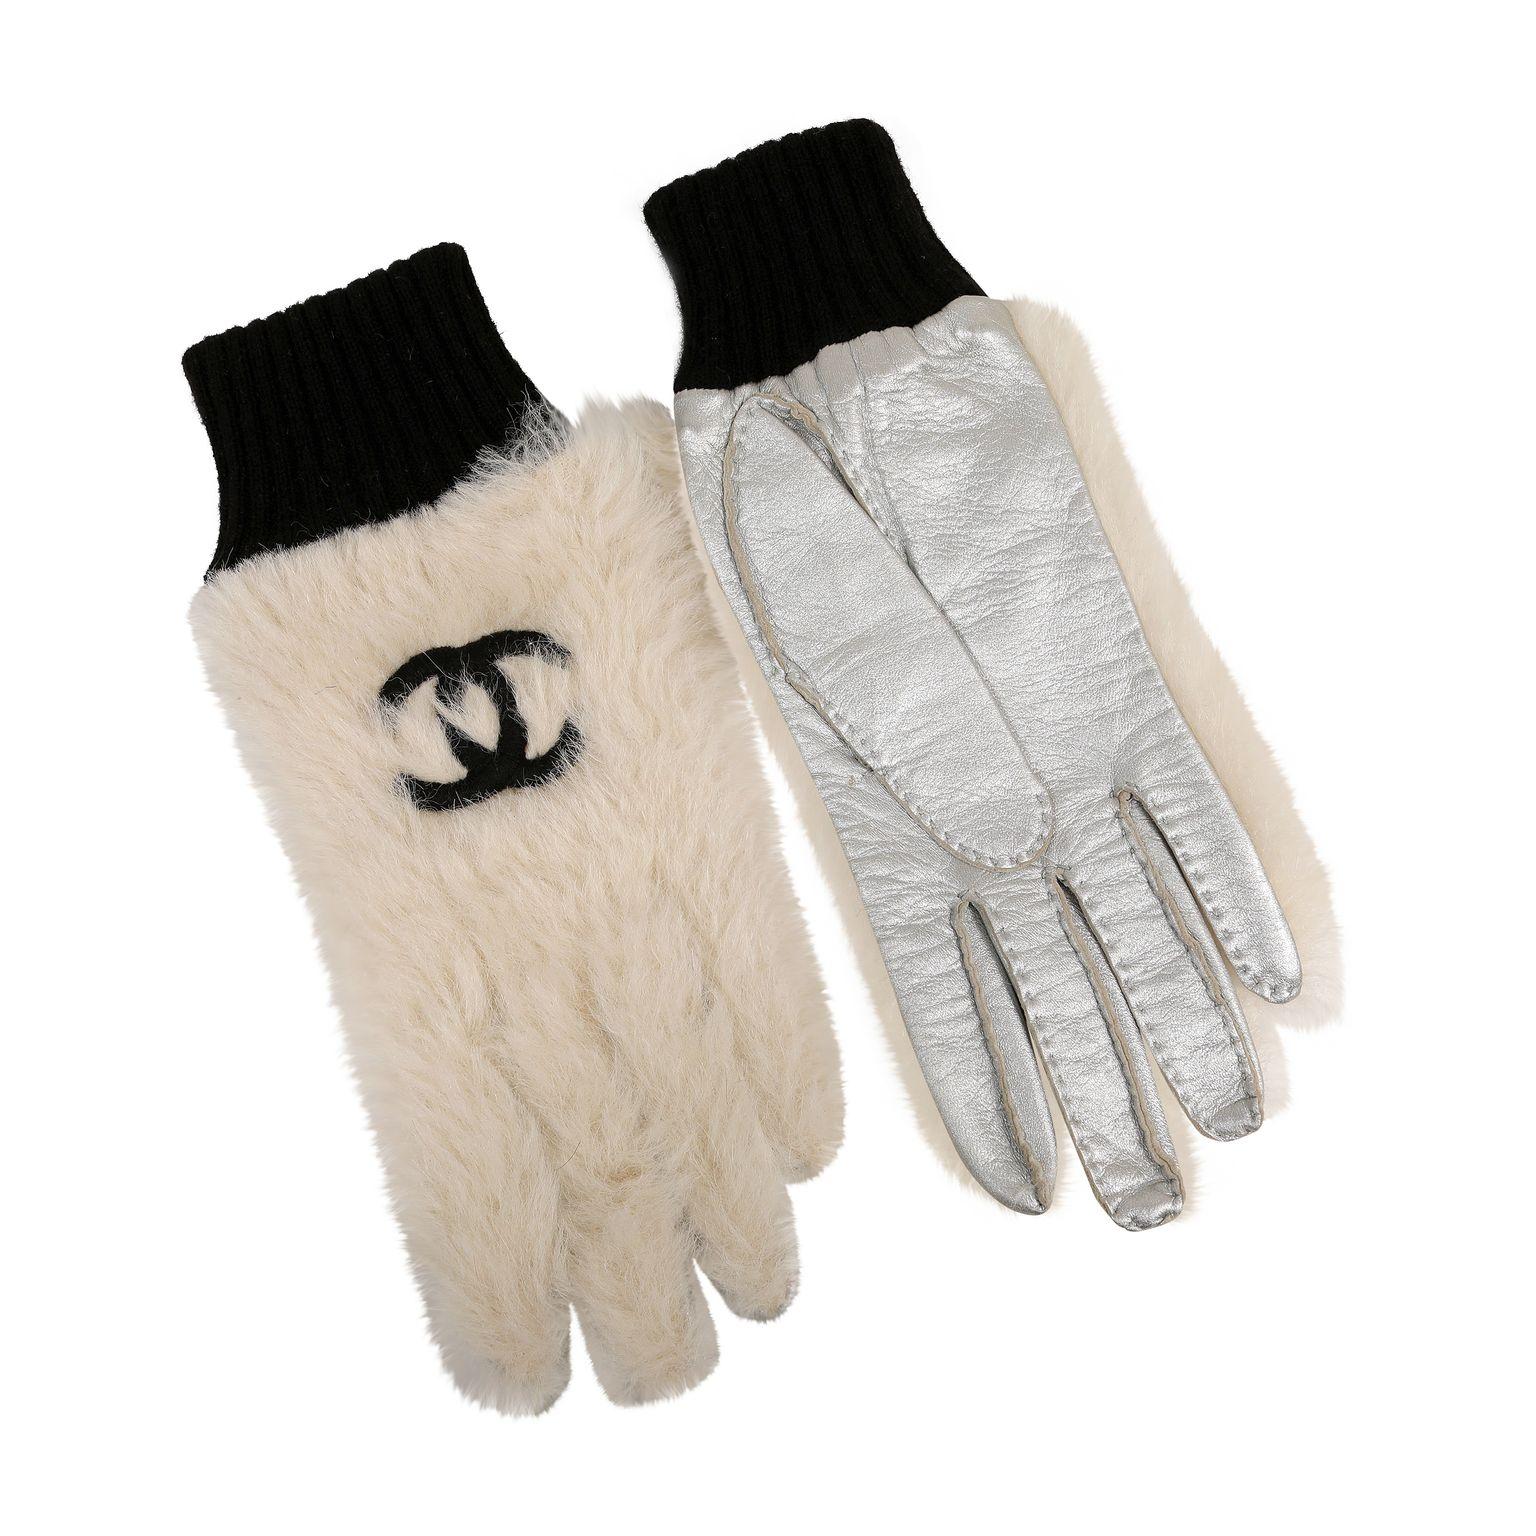 Diese authentischen Chanel White Fur CC Handschuhe sind tadellos.  Weiße Winterhandschuhe mit schwarzer, ineinandergreifender CC-Stickerei und schwarzen Strickbündchen.  Silbernes Metallic-Leder auf der Handfläche.   Inklusive Tasche oder Box. 